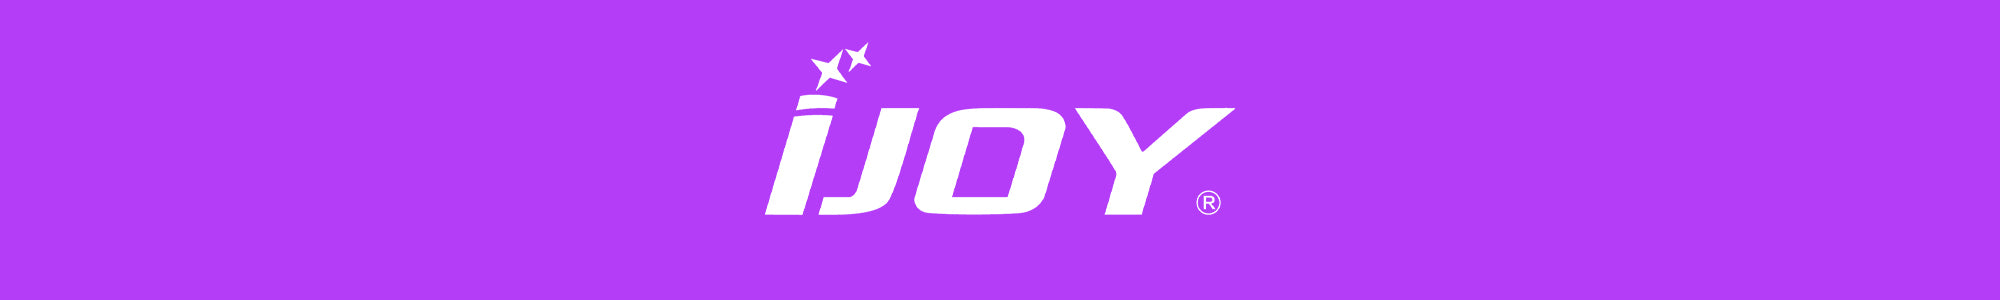 ijoy box mods uk